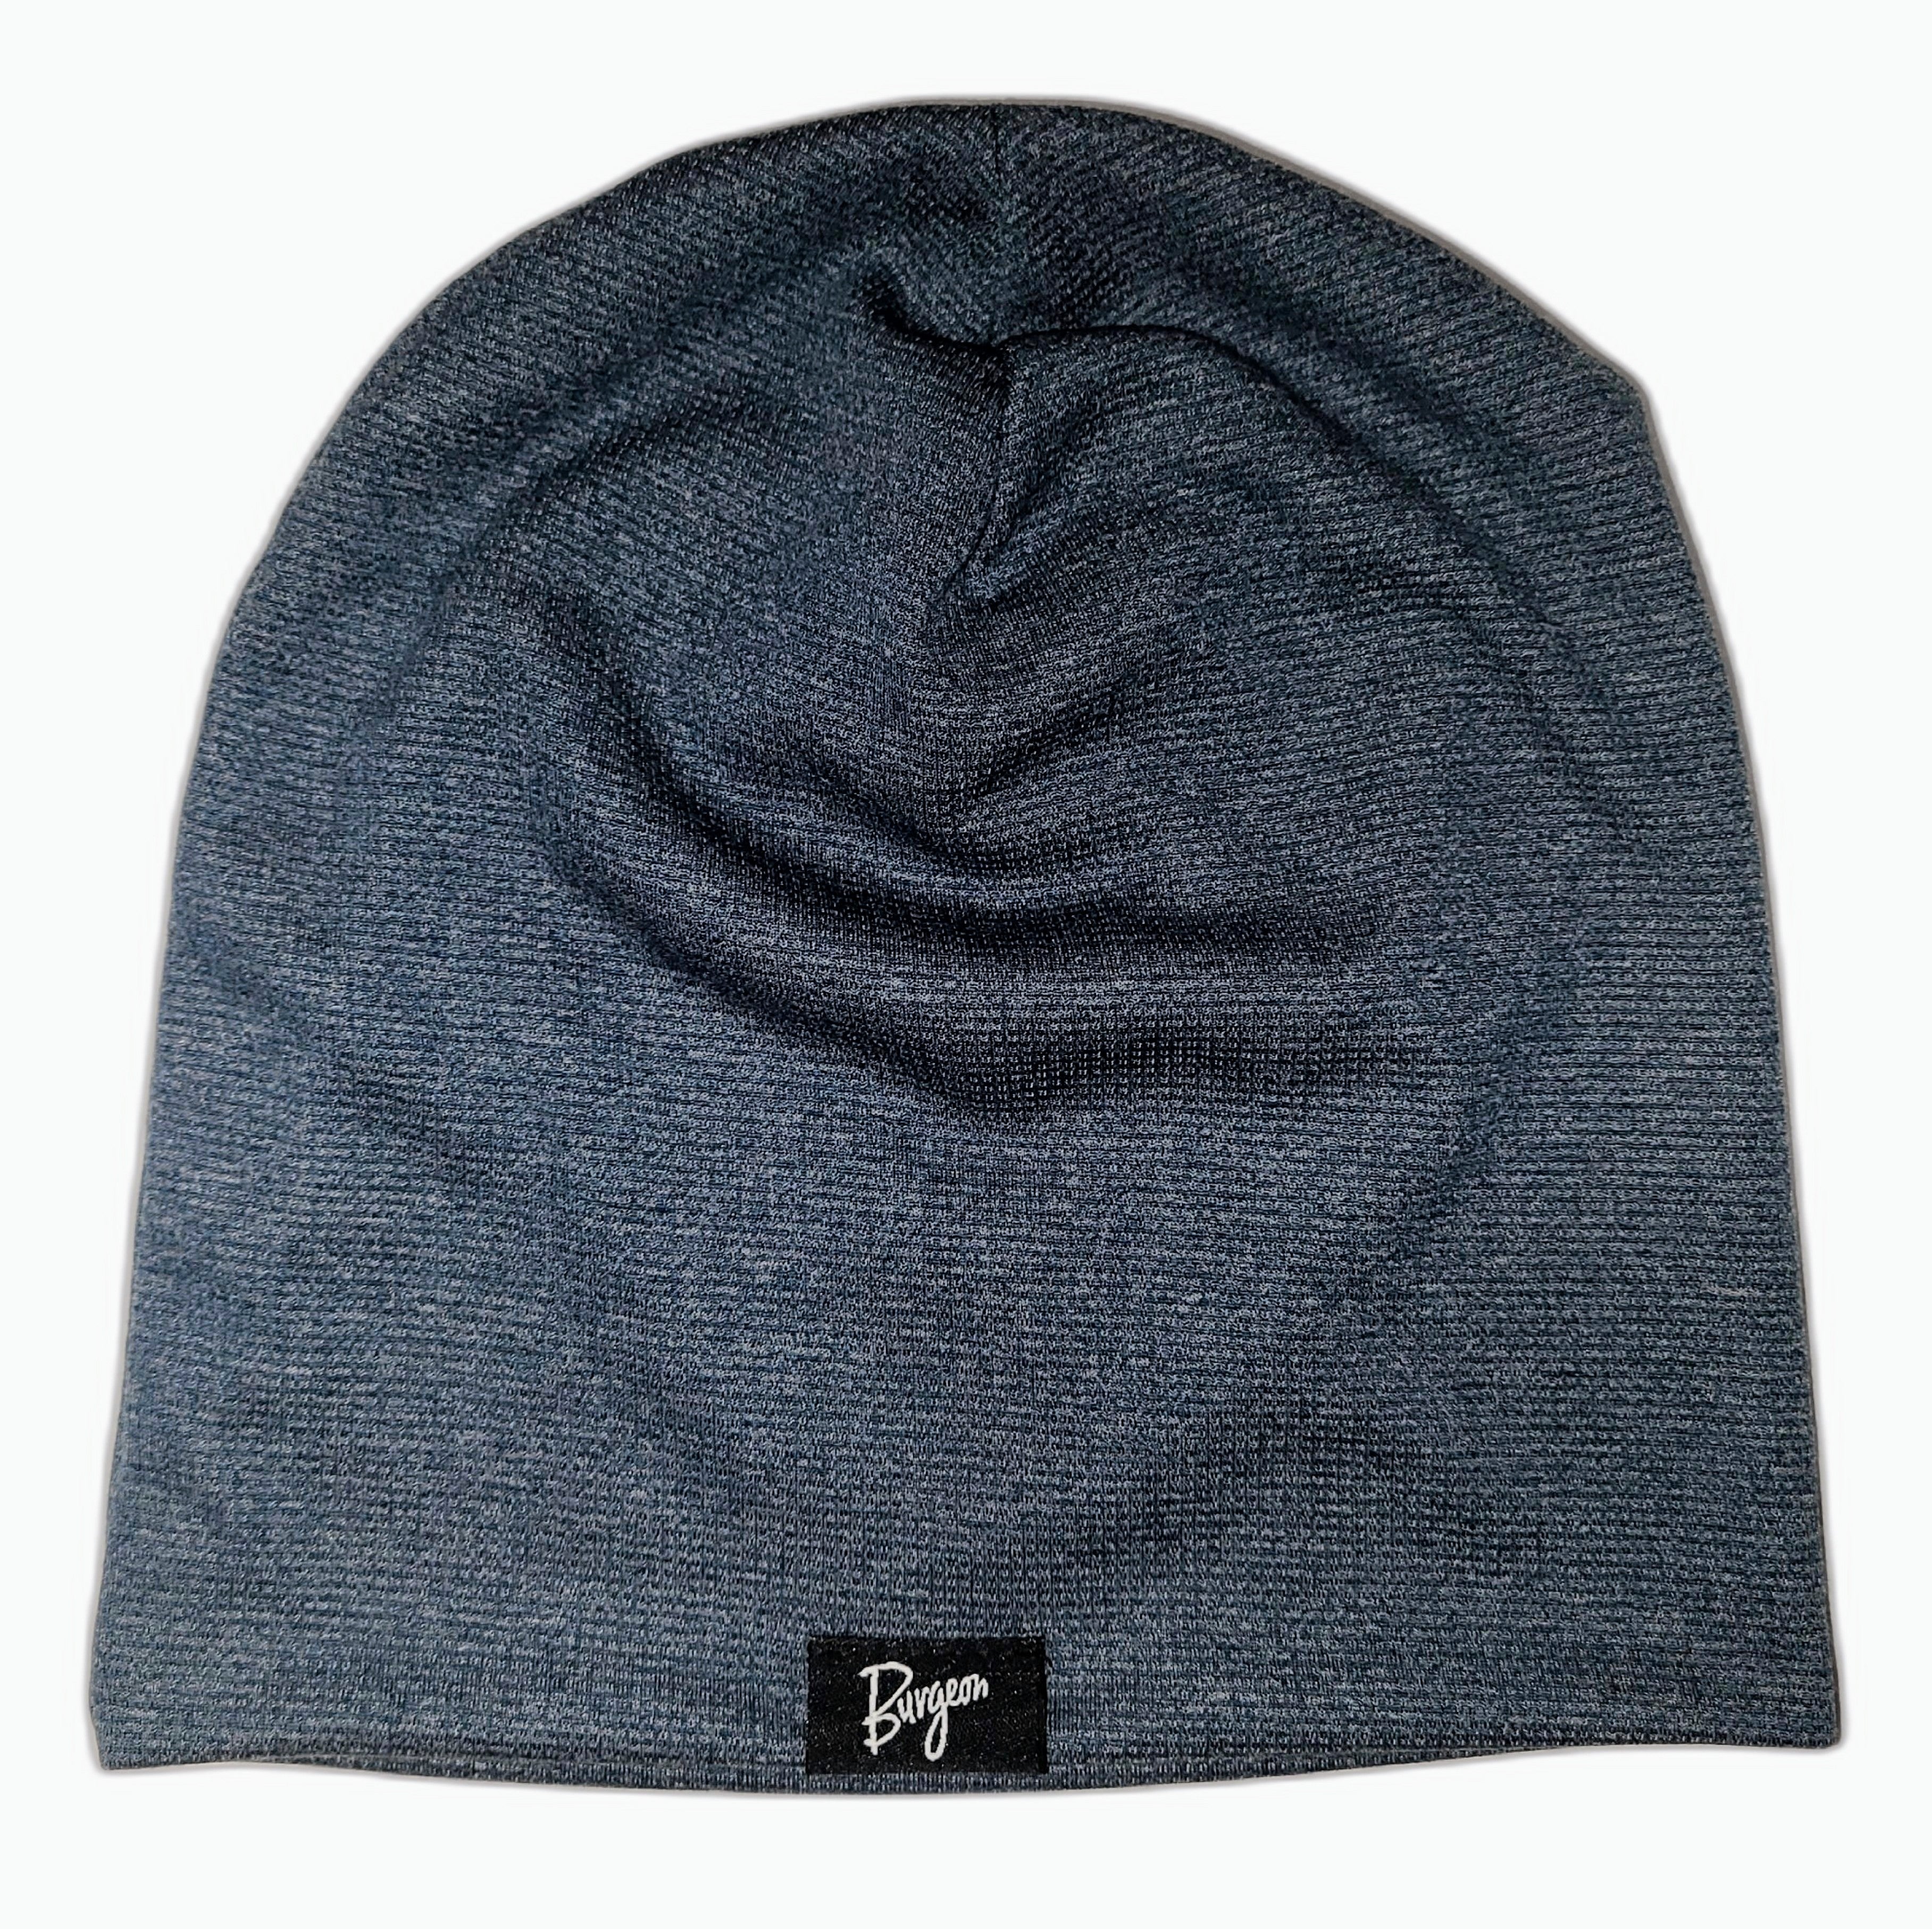 Burgeon – Outdoor Hat Power Beanie Wool